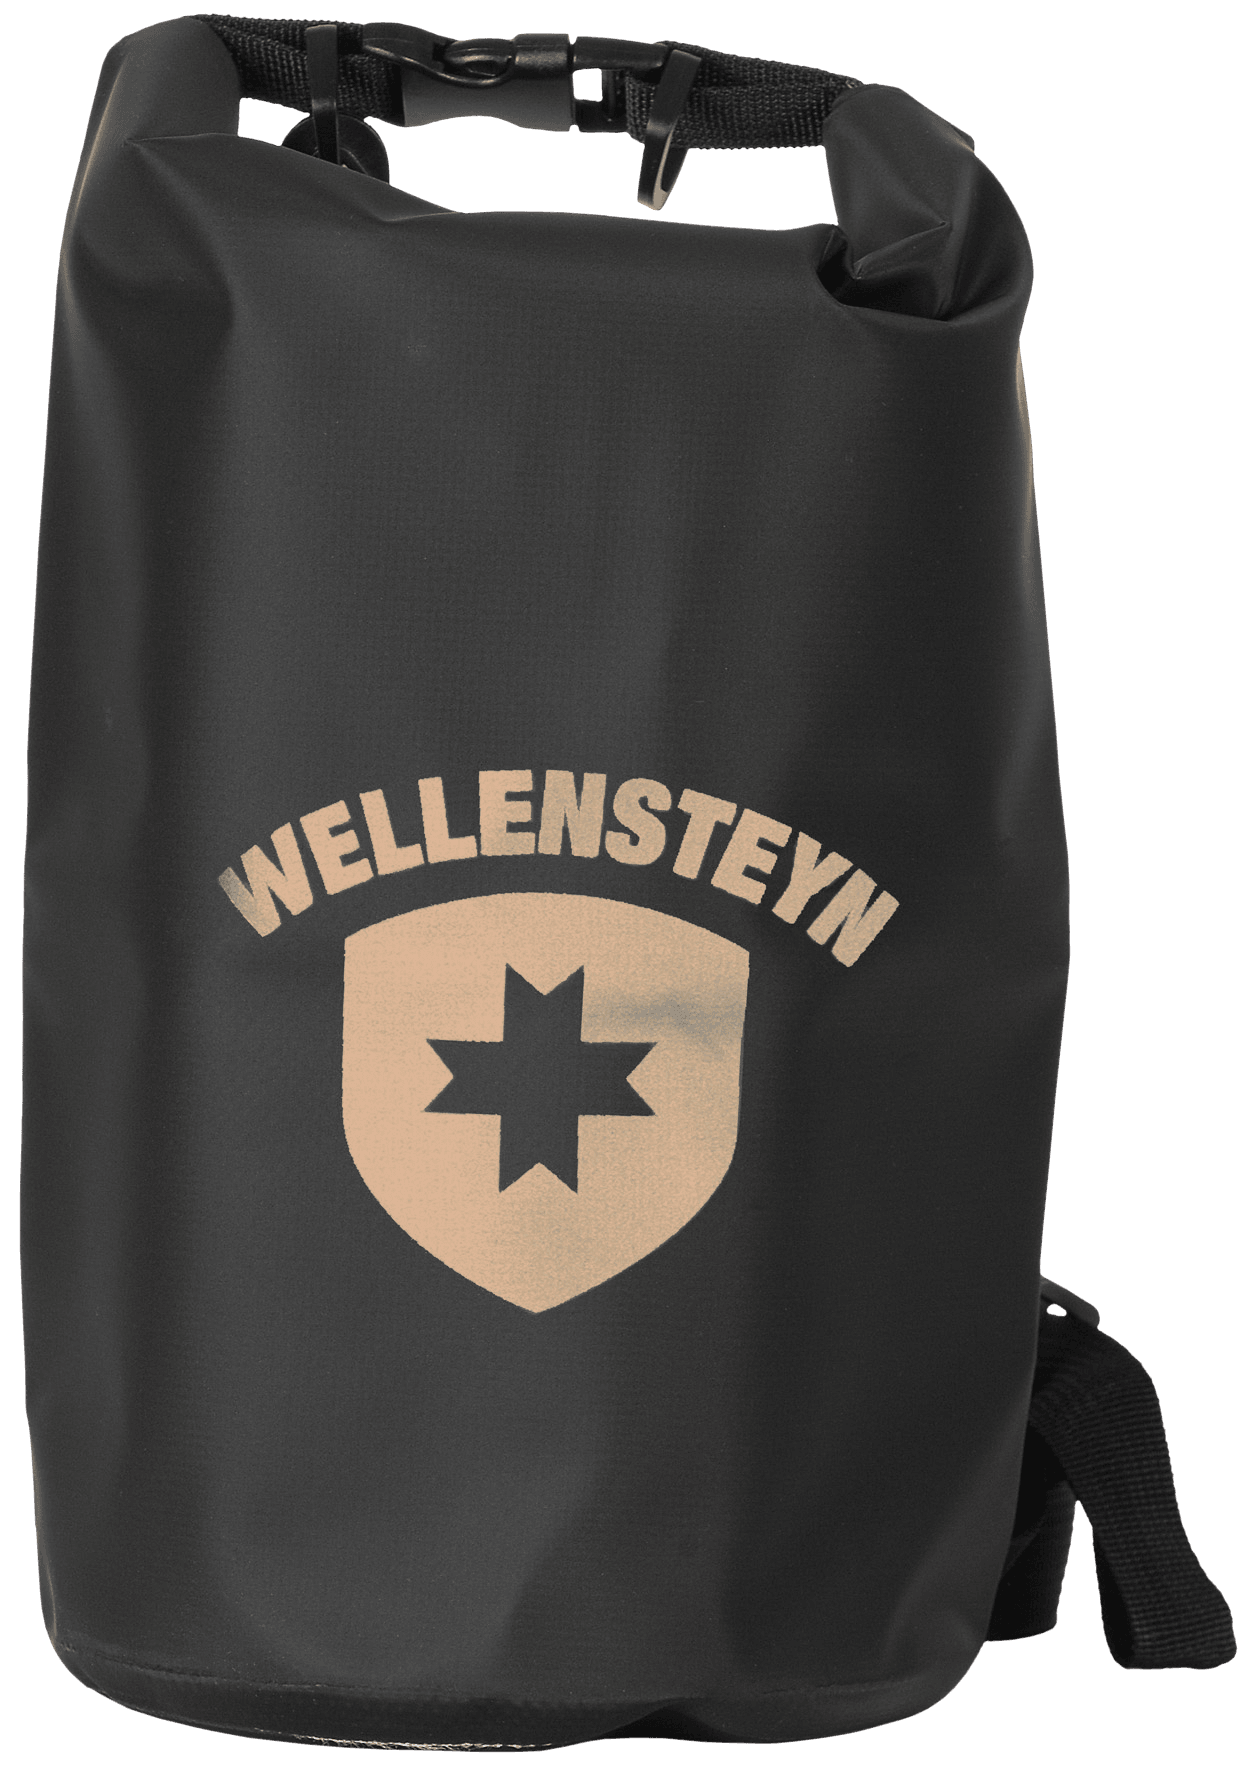 Wellensteyn Ocean Bag